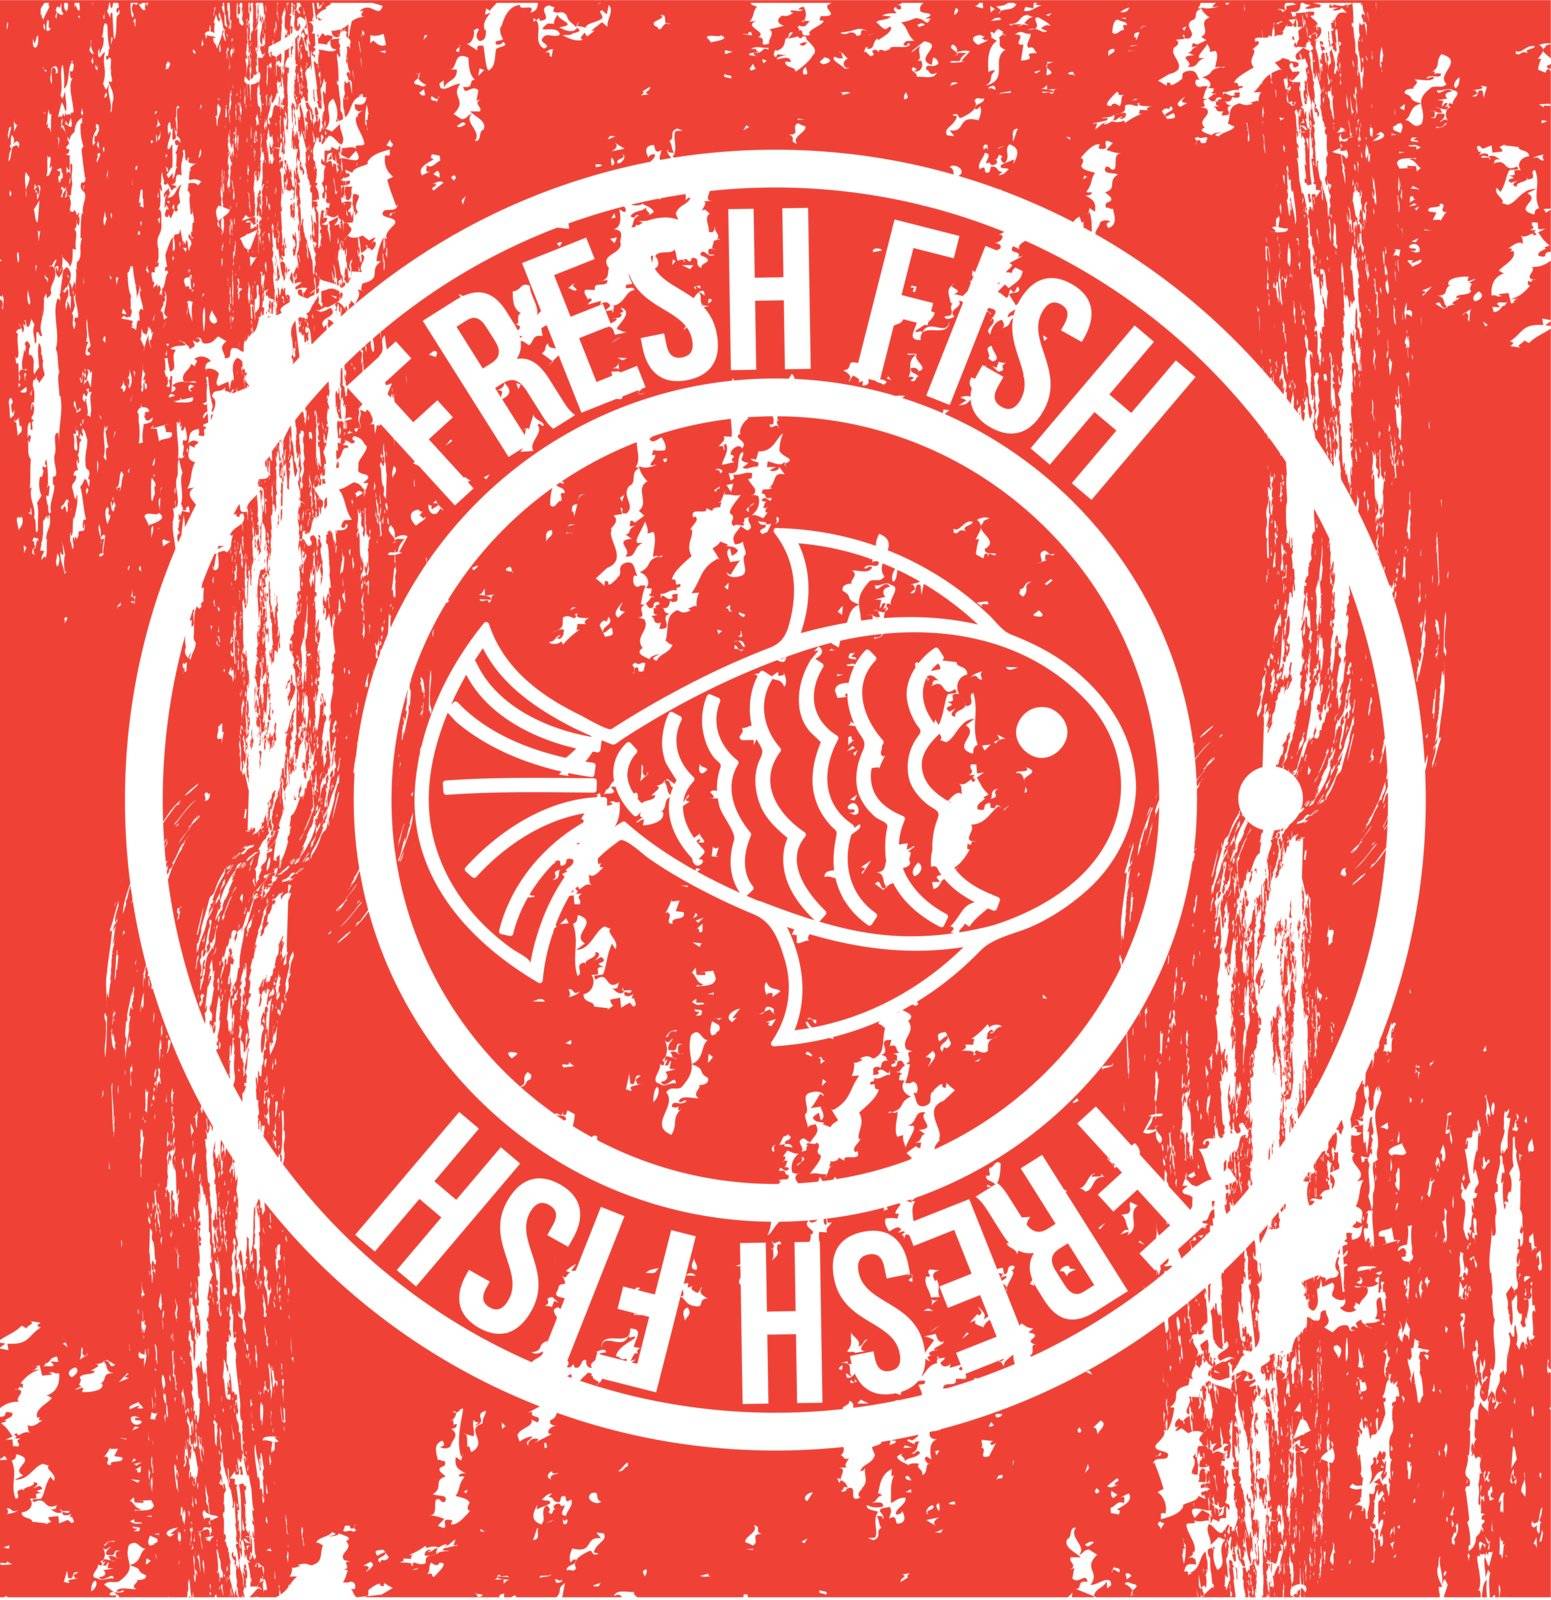 fresh fish by yupiramos